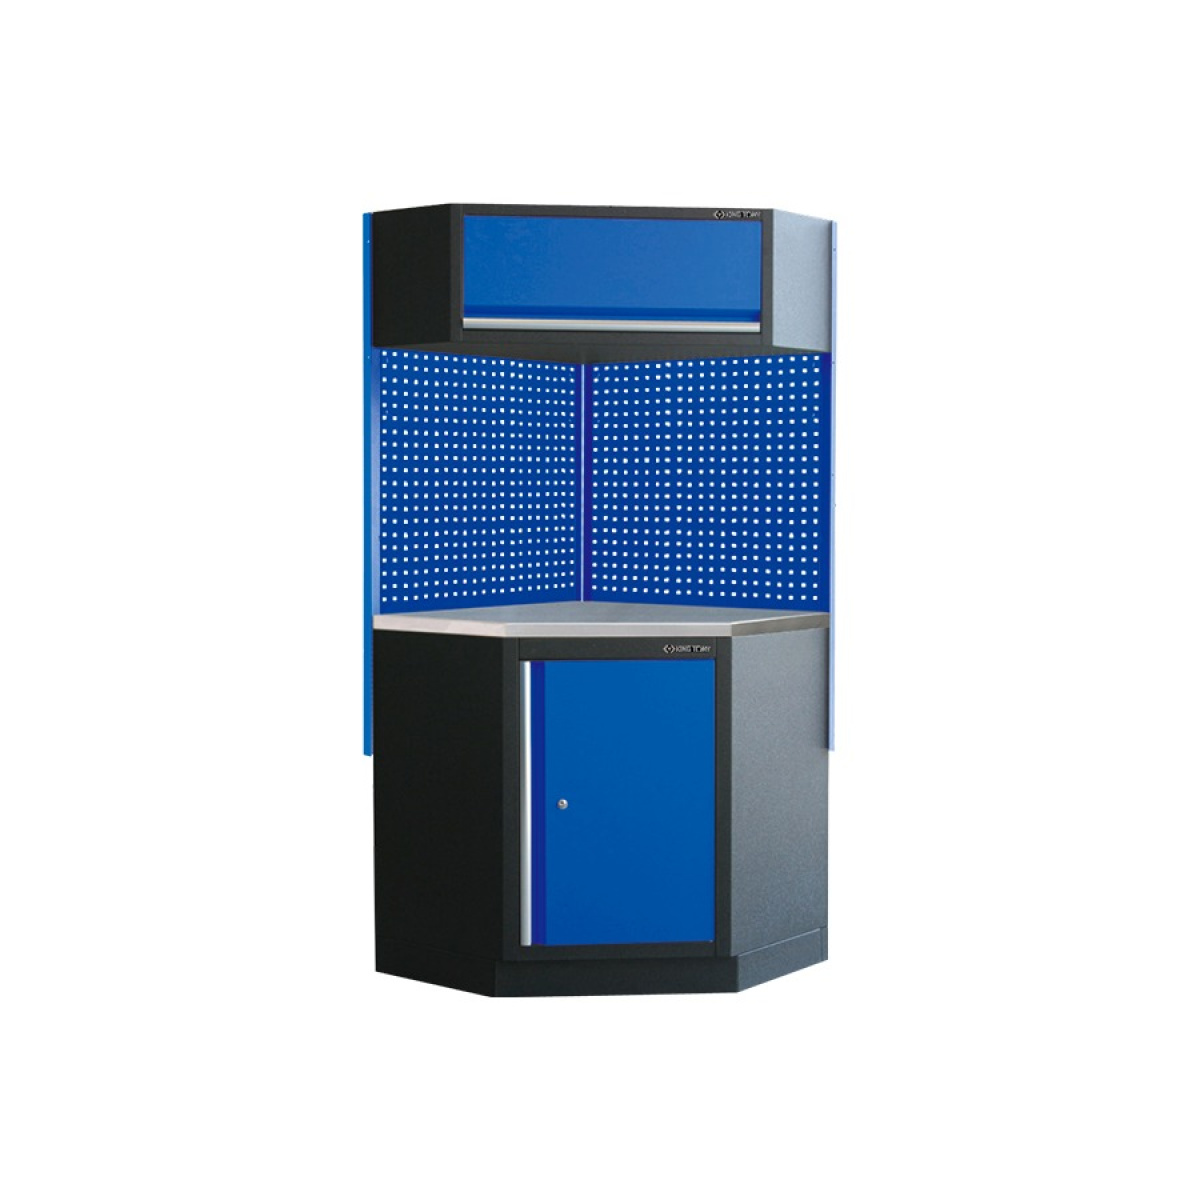 Sada rohového dílenského nábytku s kovovou deskou (modrý)